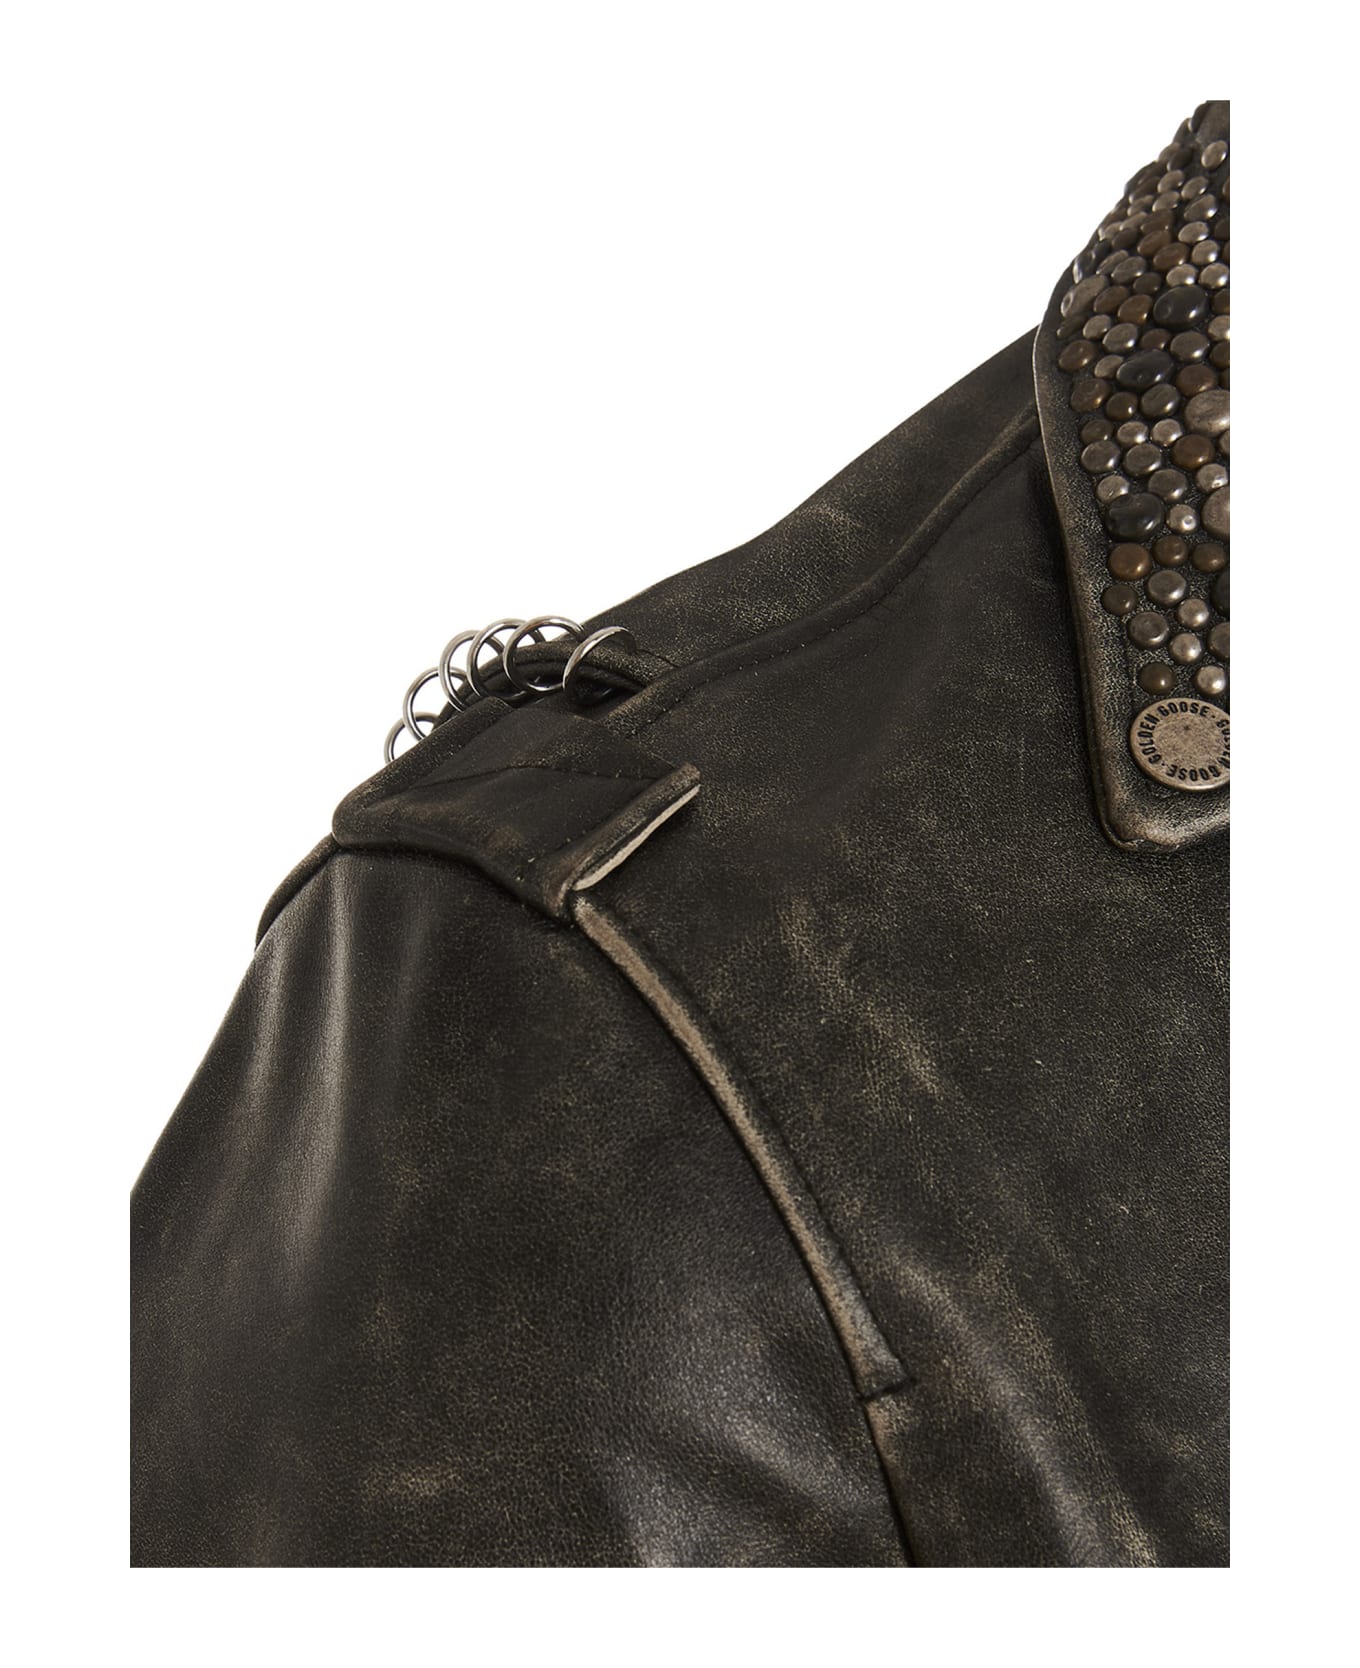 Golden Goose Distressed Leather Biker Jacket - Black